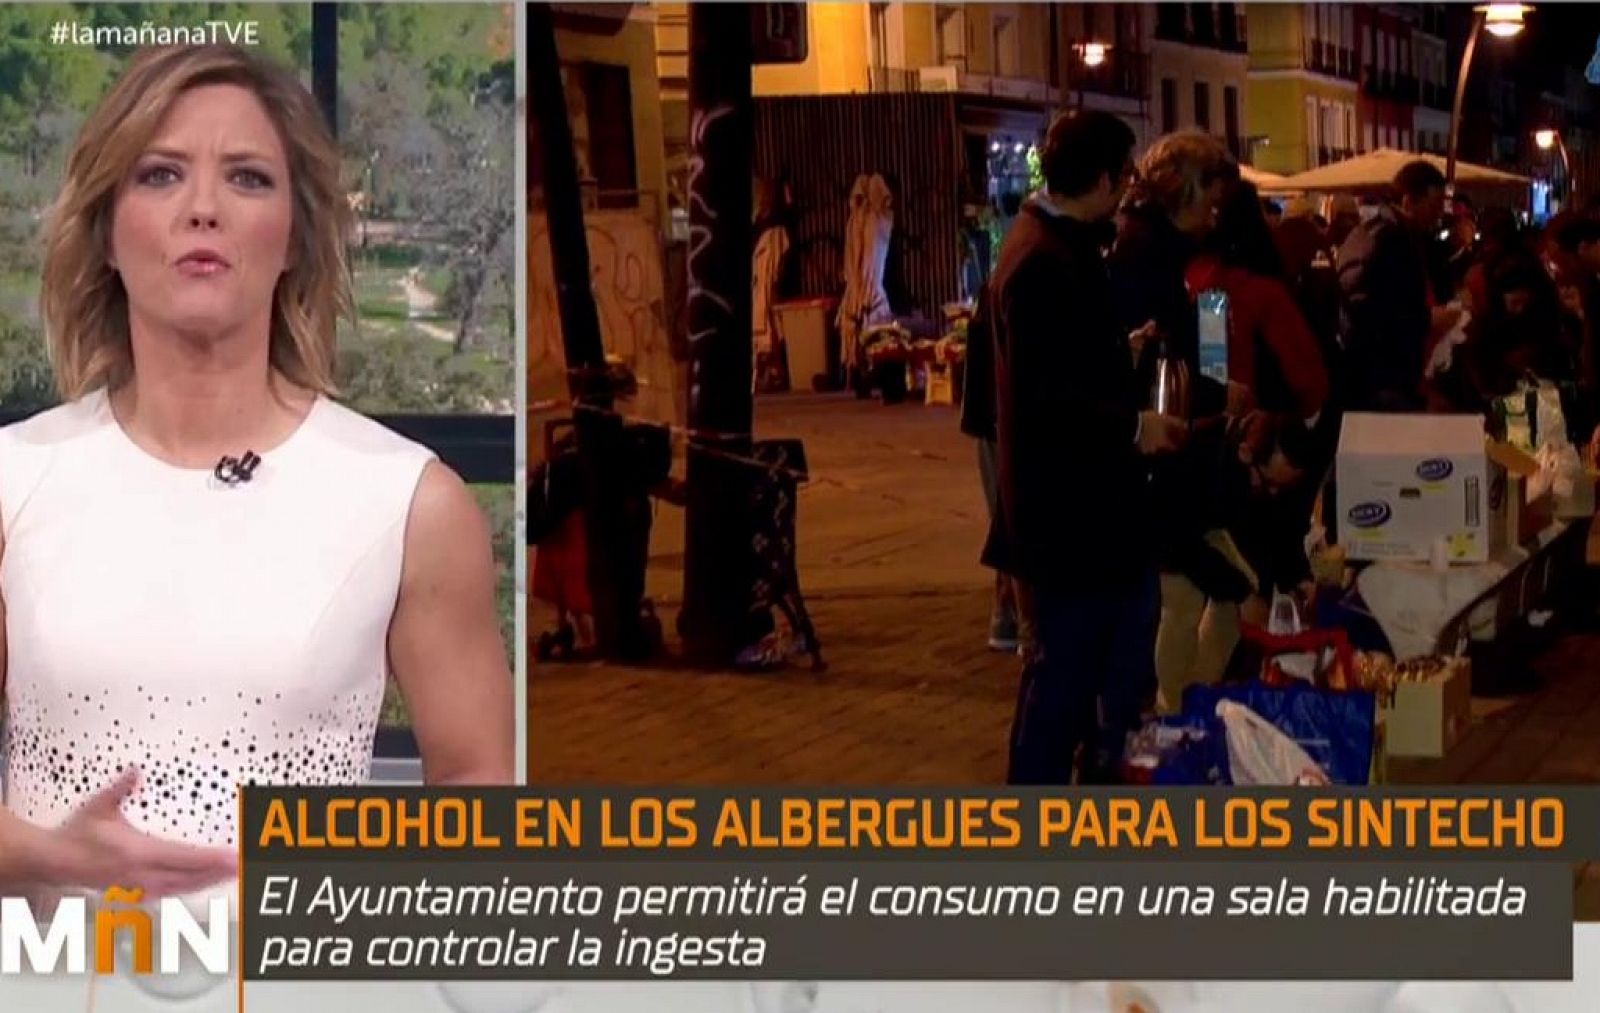 La Mañana - Alcohol en los Albergues: La Comunidad de Madrid habilitará un lugar controlado donde las personas sin hogar puedan beber